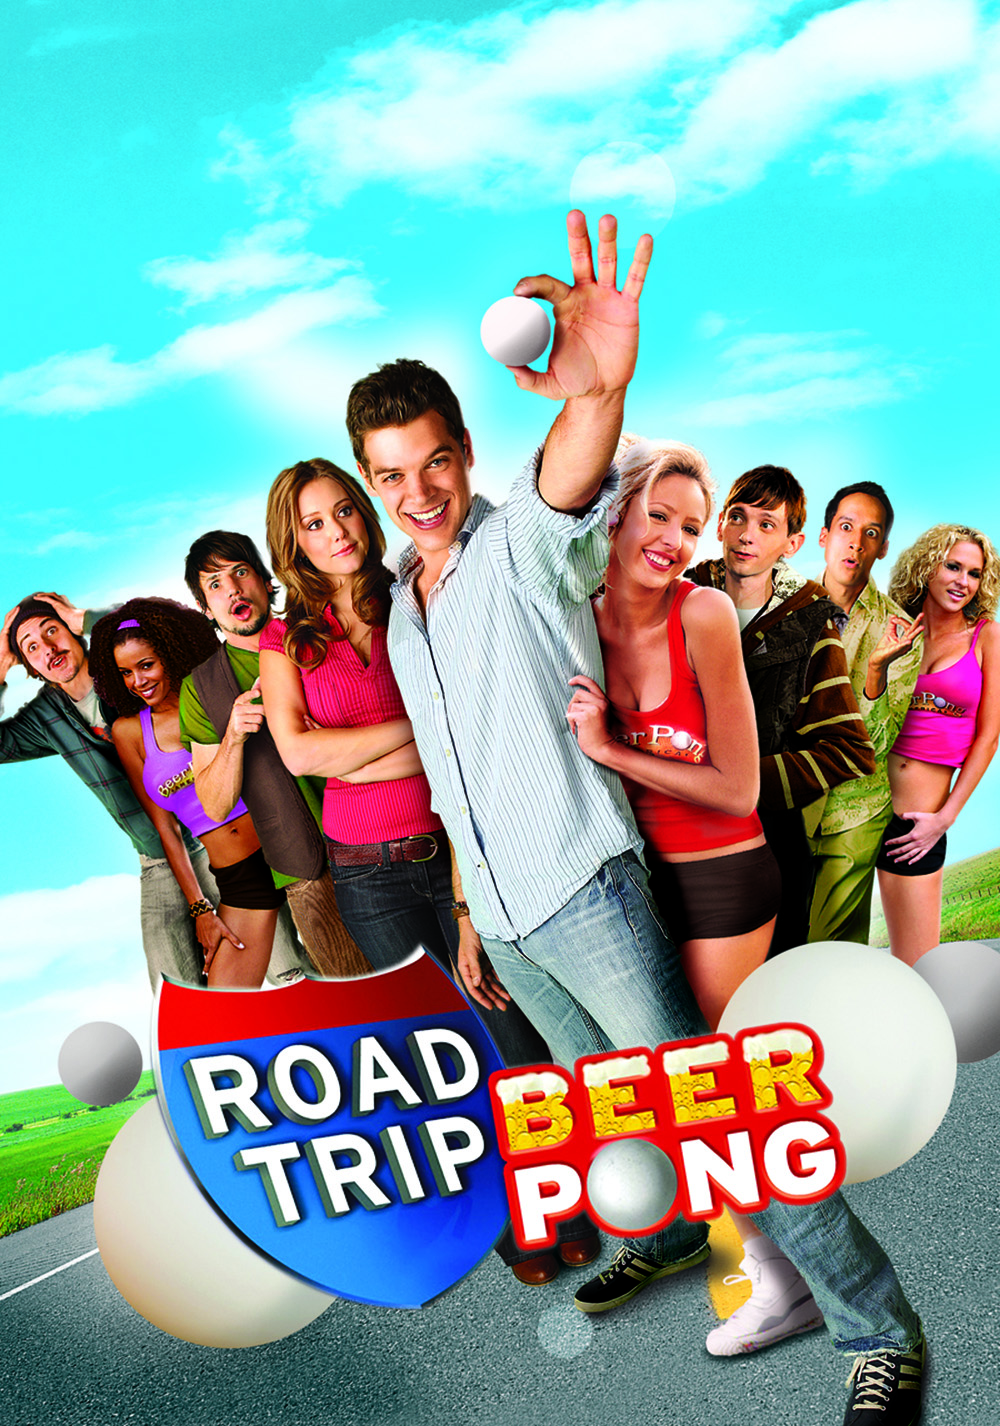 road trip beer pong download